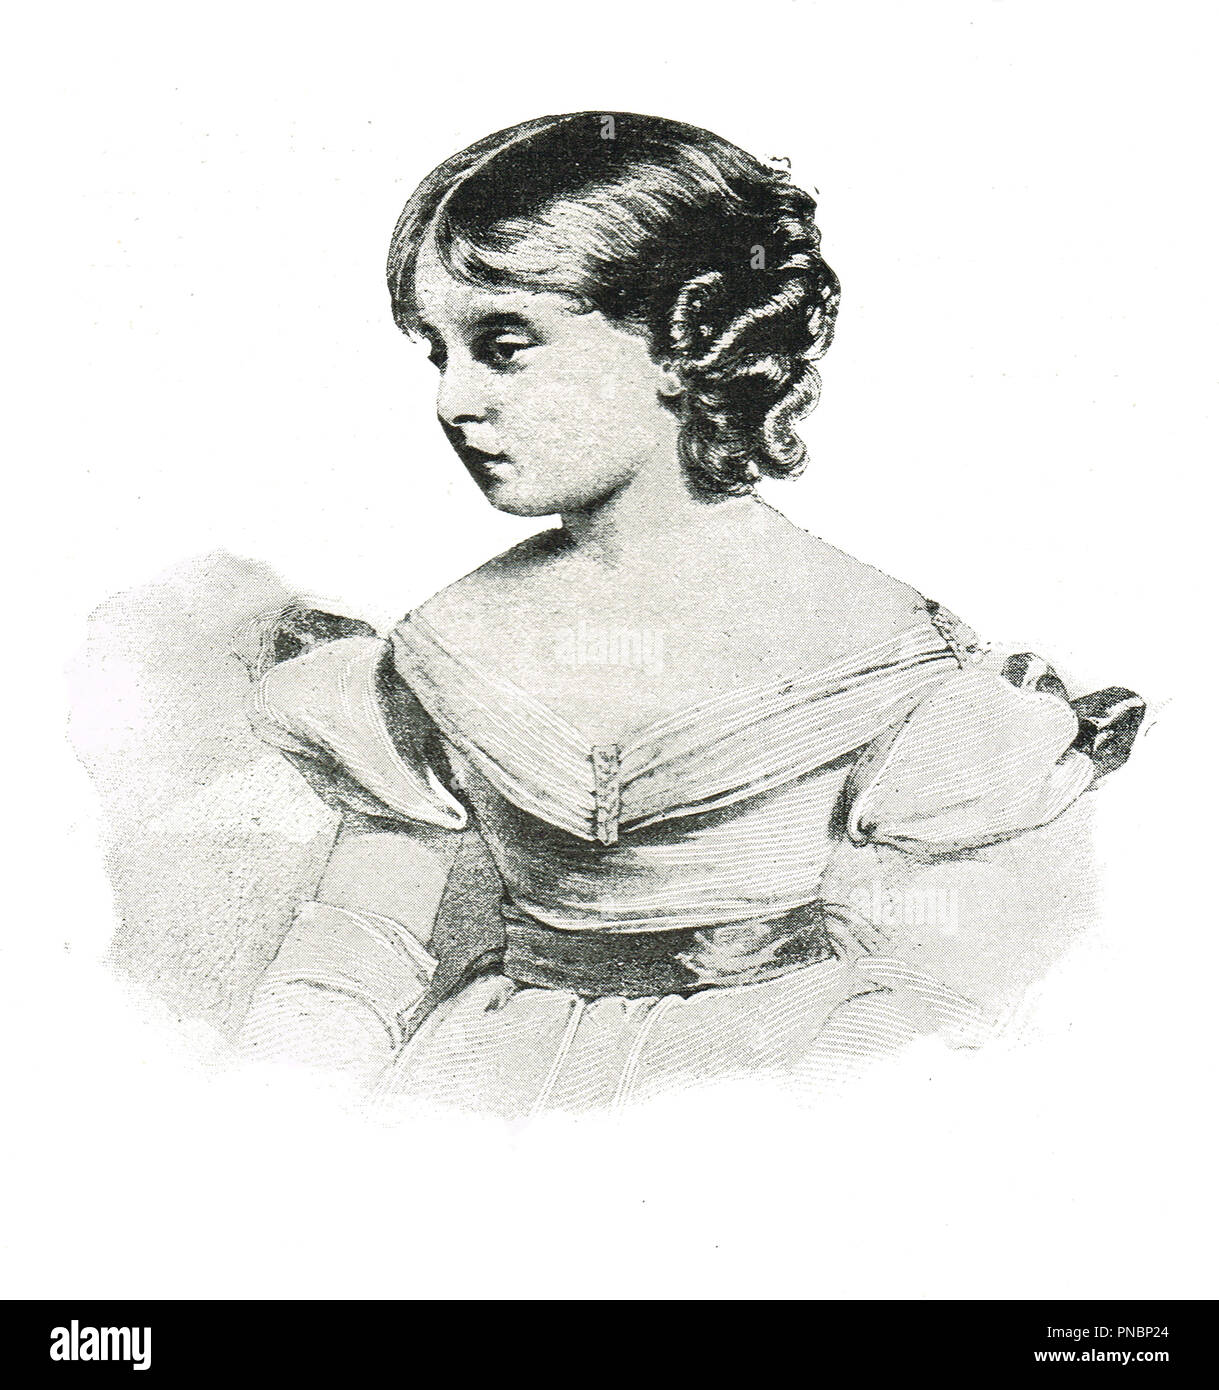 Prinzessin Victoria im Alter von 10, zukünftige Königin Victoria als Kind. Später Königin des Vereinigten Königreichs von Großbritannien und Irland, Kaiserin von Indien Stockfoto